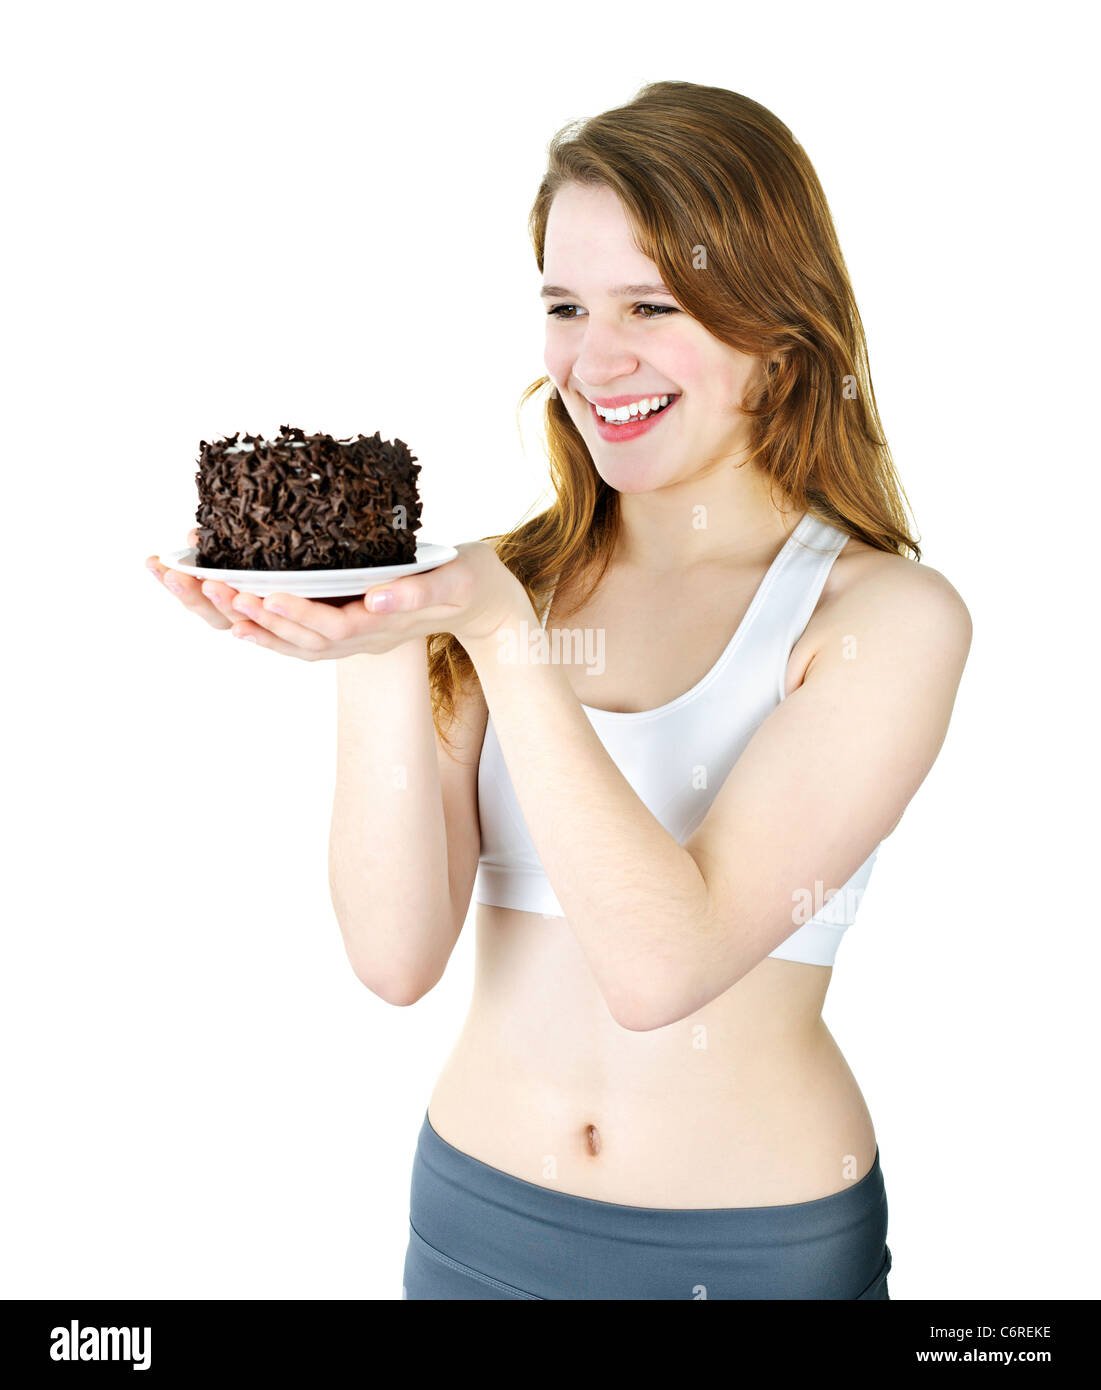 Lächelnde junge Frau hält einen leckeren Schokoladenkuchen Stockfoto